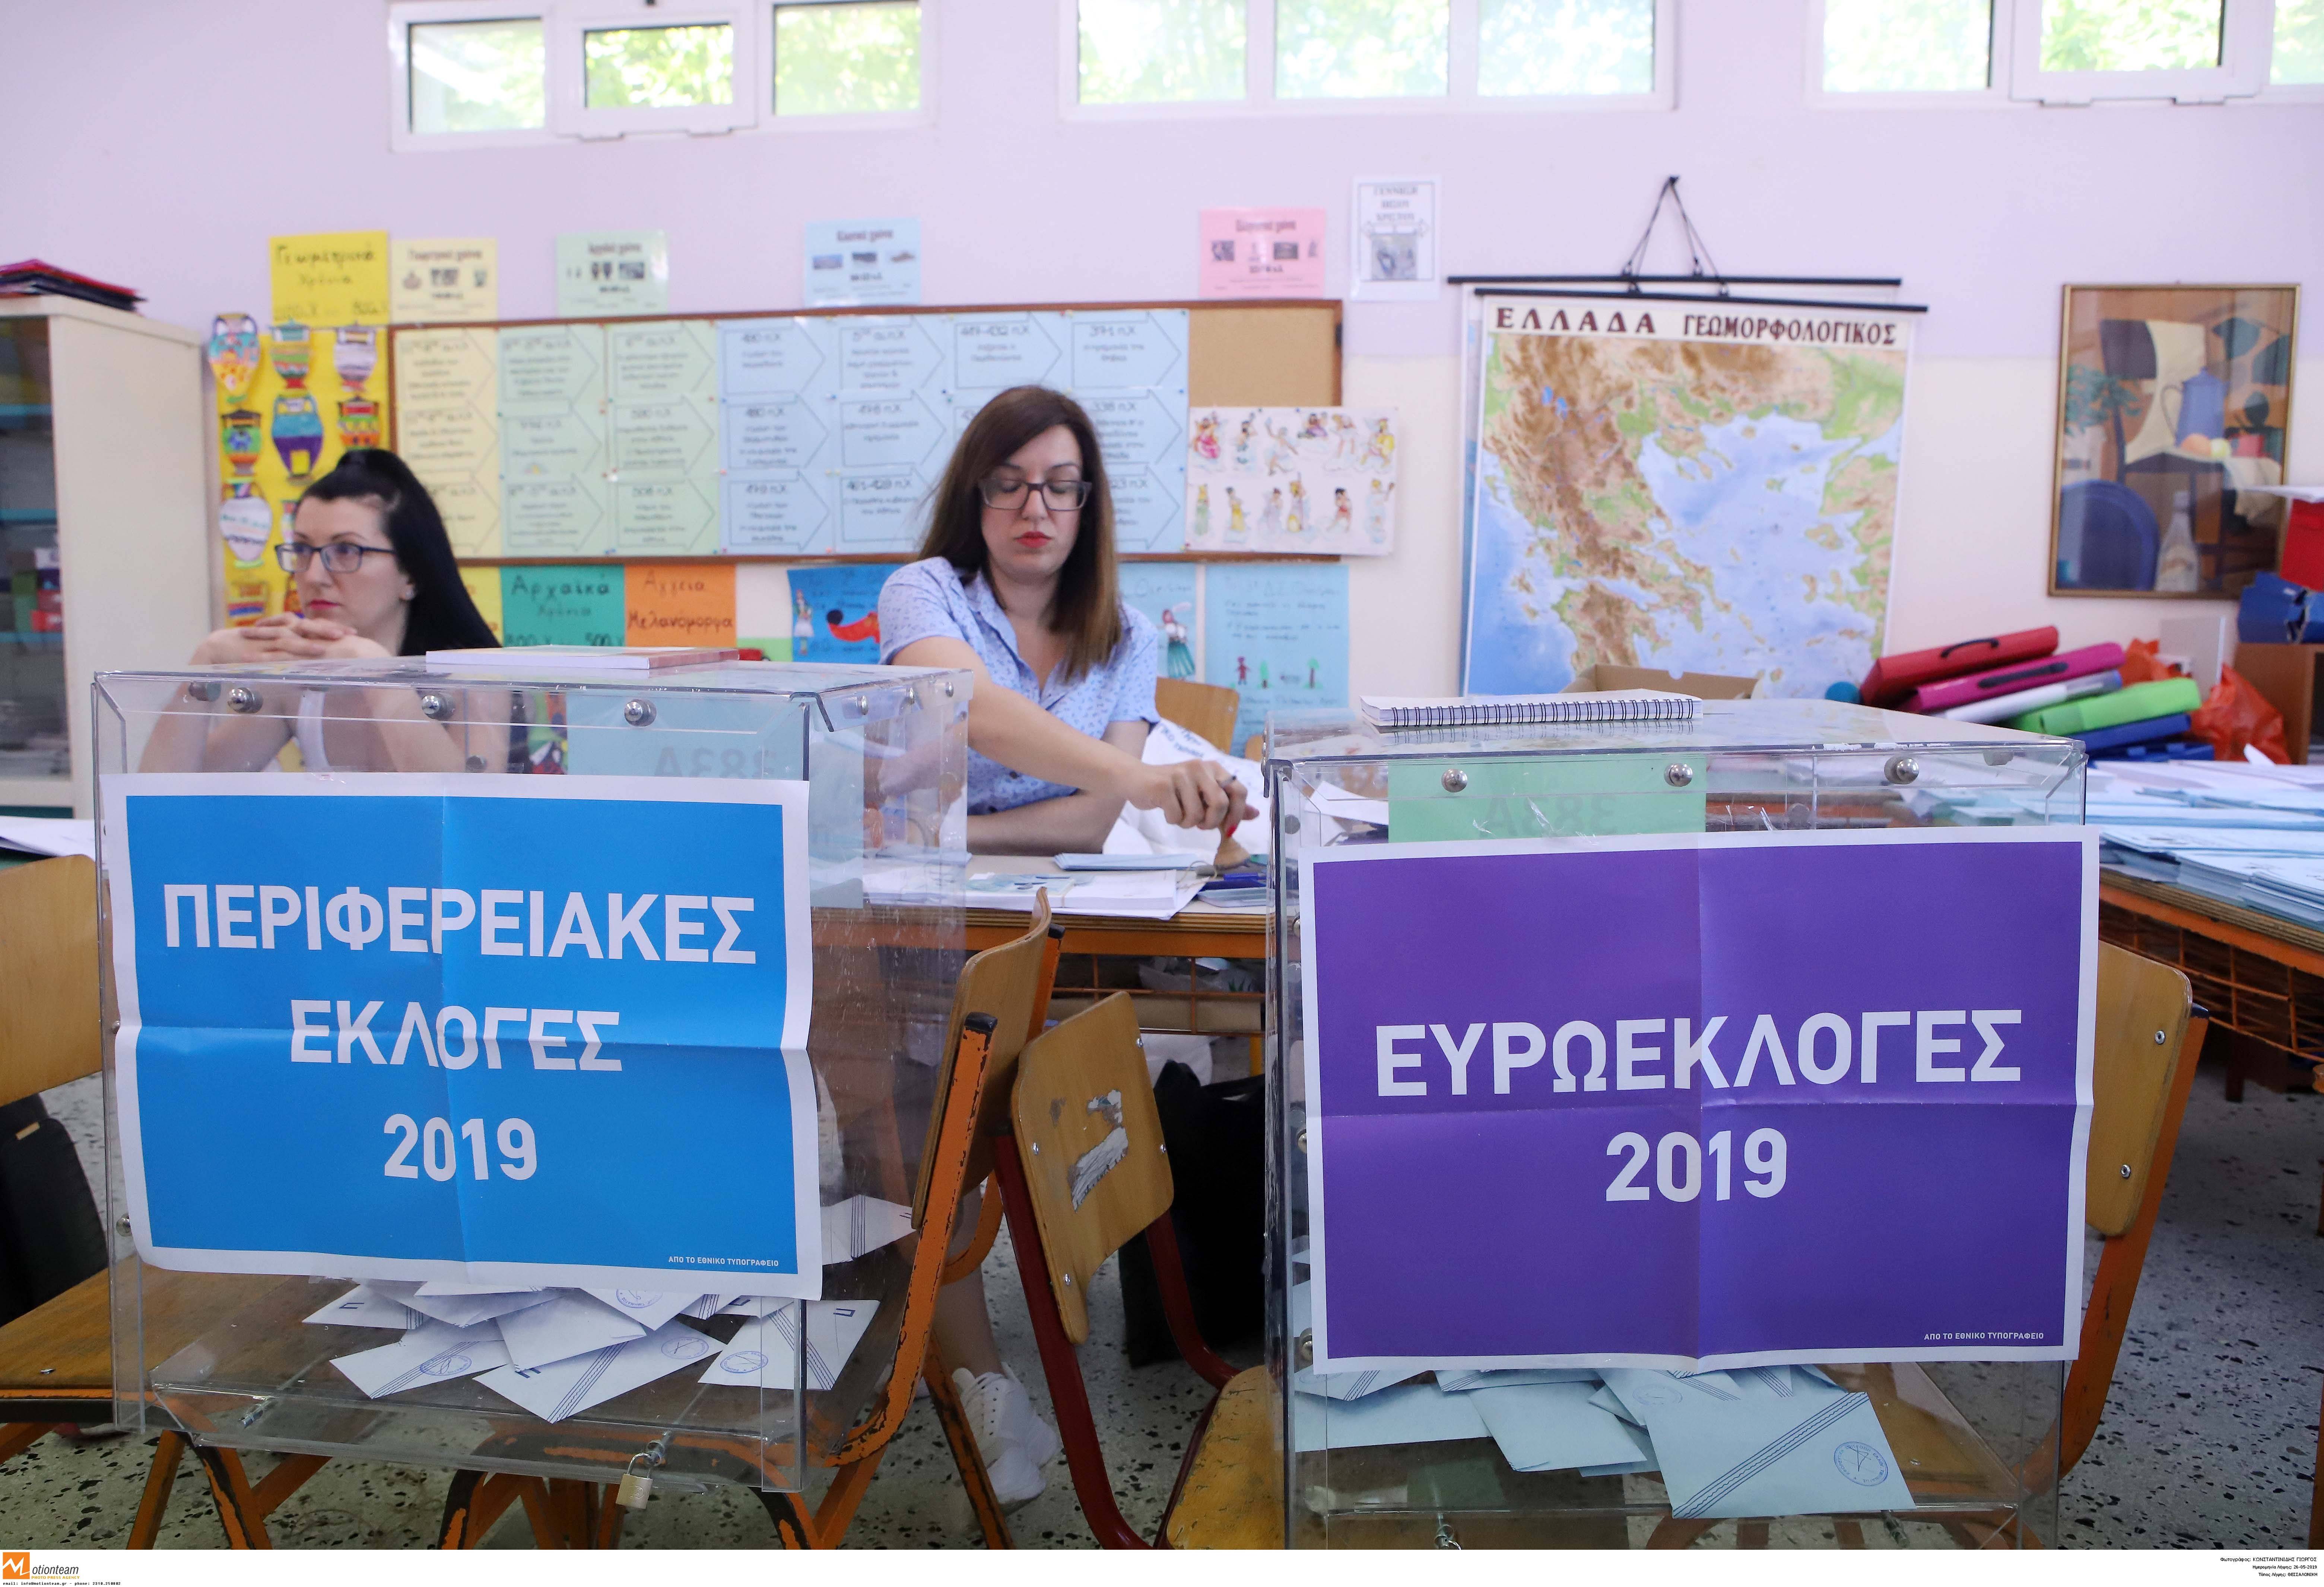 Ευρωεκλογές 2019: Προβάδισμα 5% Νέας Δημοκρατίας έναντι του ΣΥΡΙΖΑ δίνει η εκτίμηση της ΕΡΤ